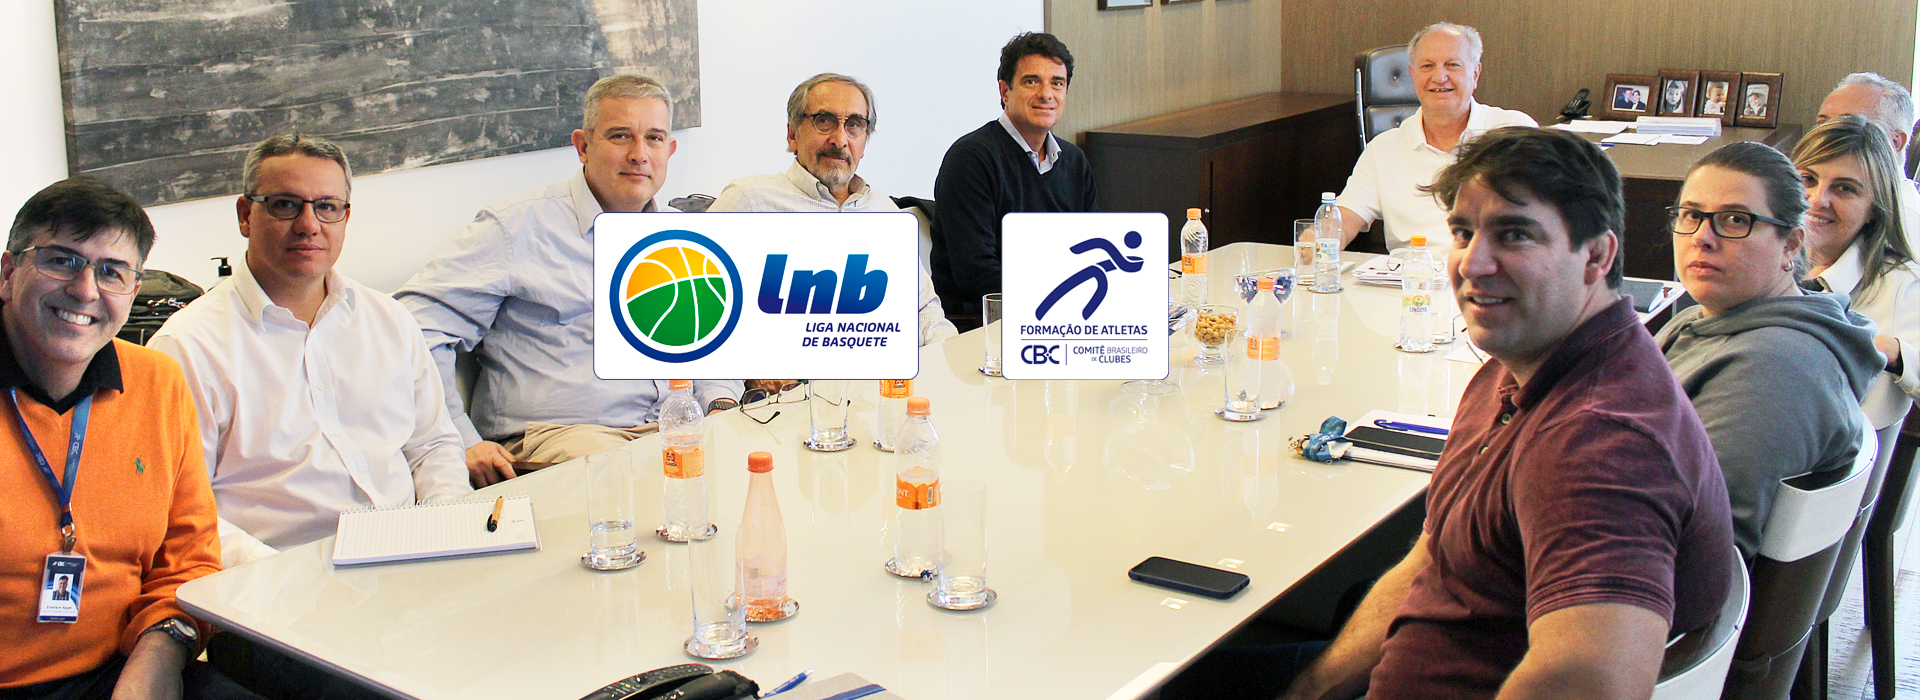 A maior competição de Basquetebol do Brasil terá mais uma vez a parceria do CBC